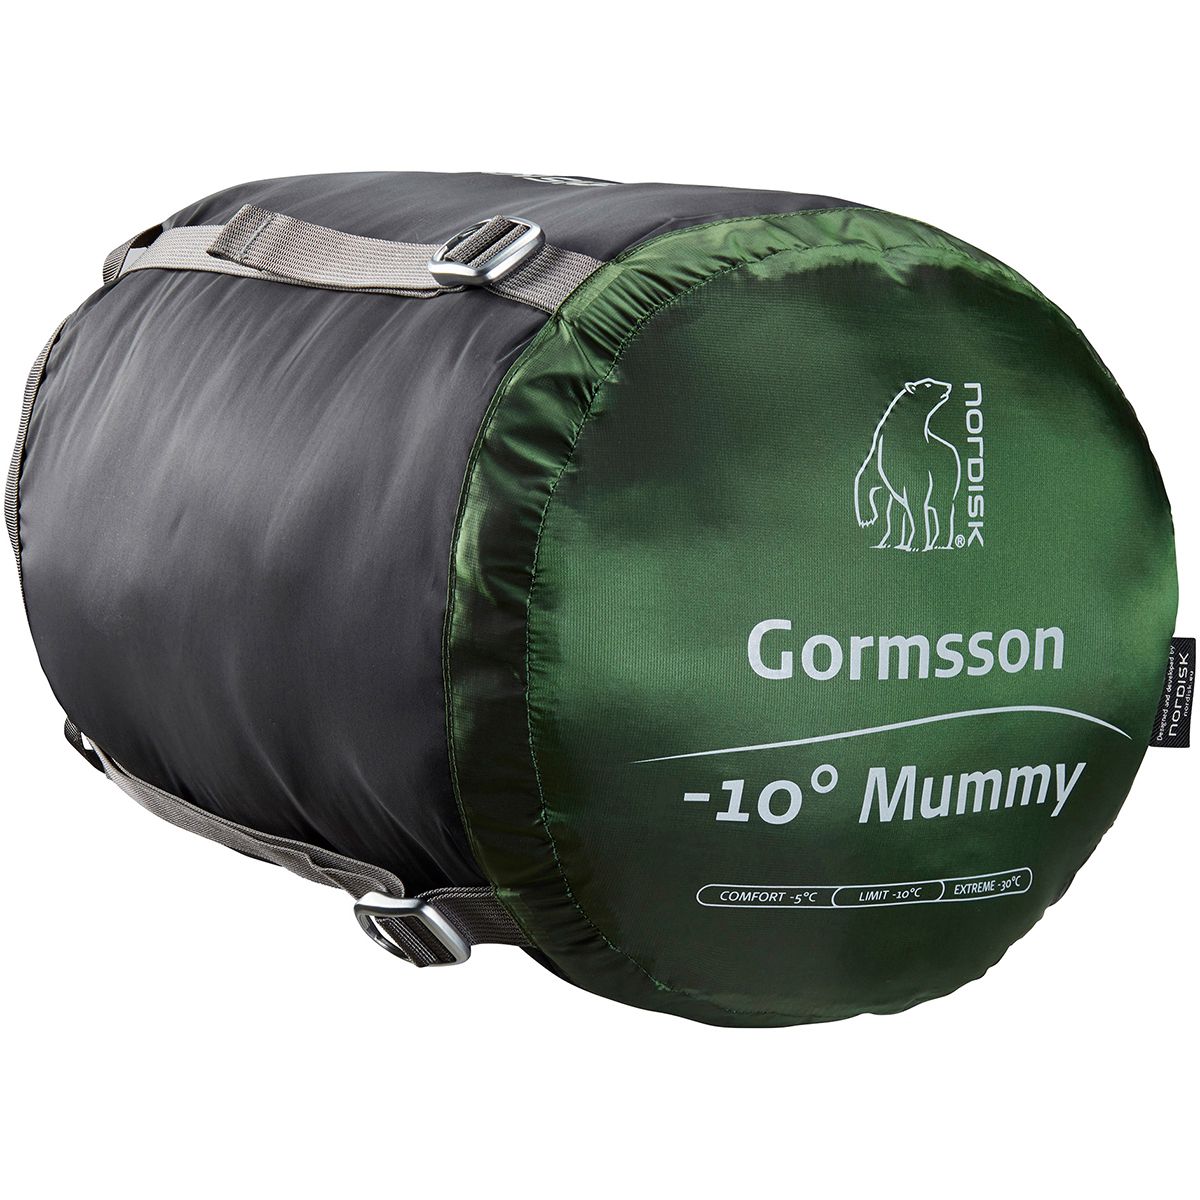 Gormsson -10° Mummy